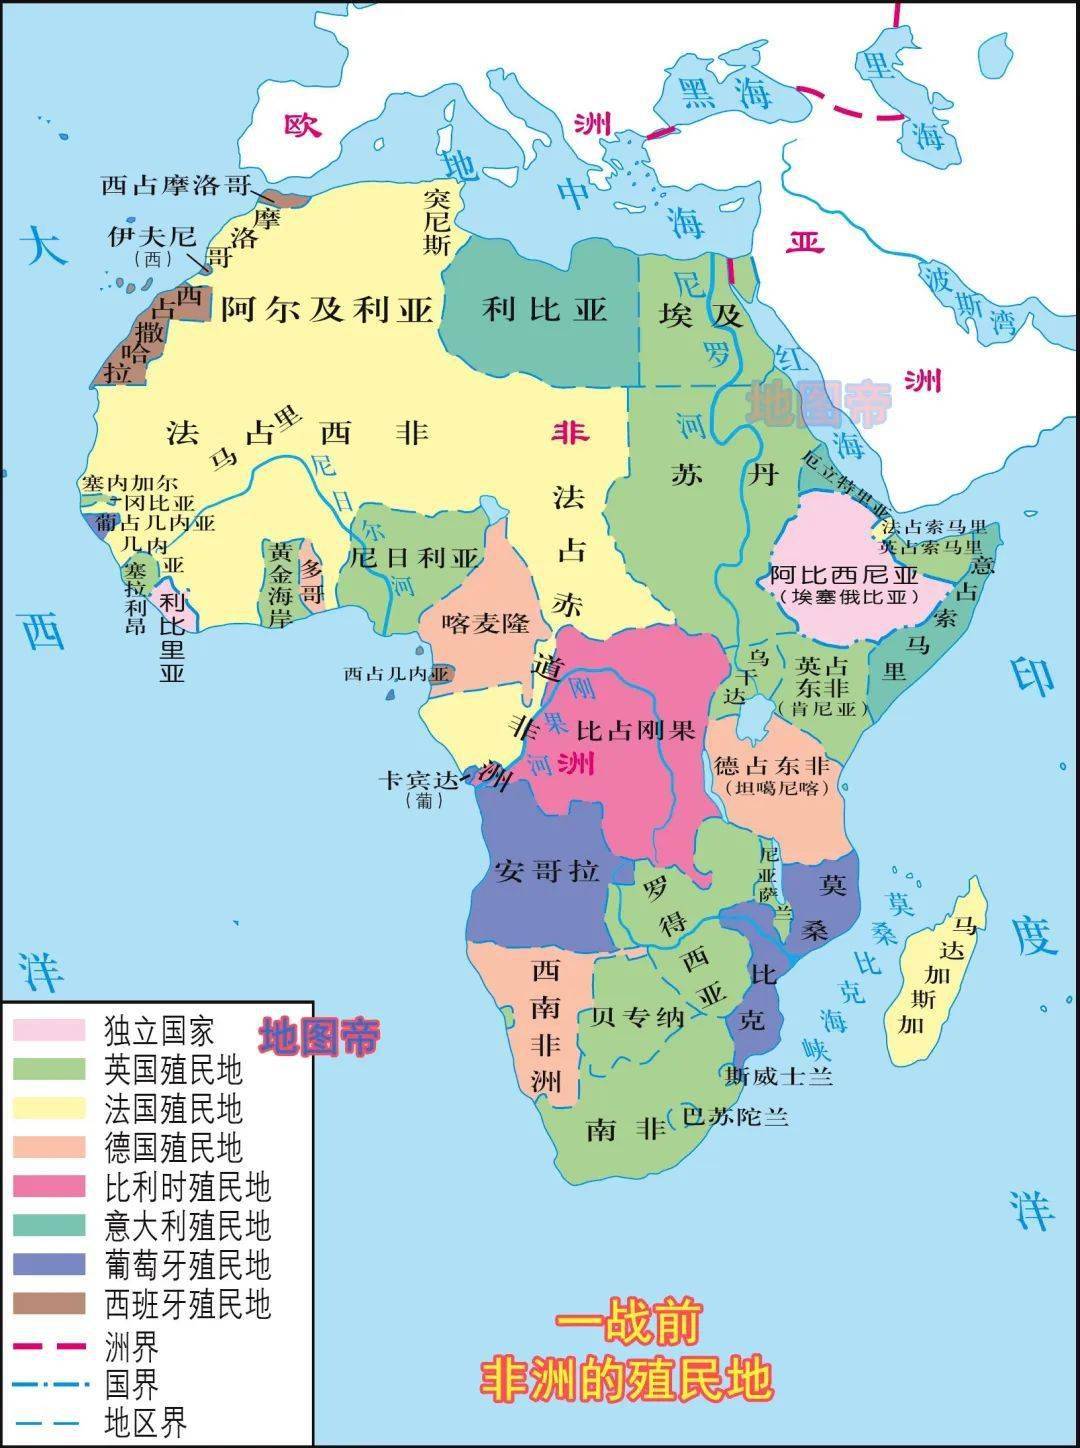 如果看一眼当时的世界地图,不难看出法国大部分殖民地都集中在非洲,而